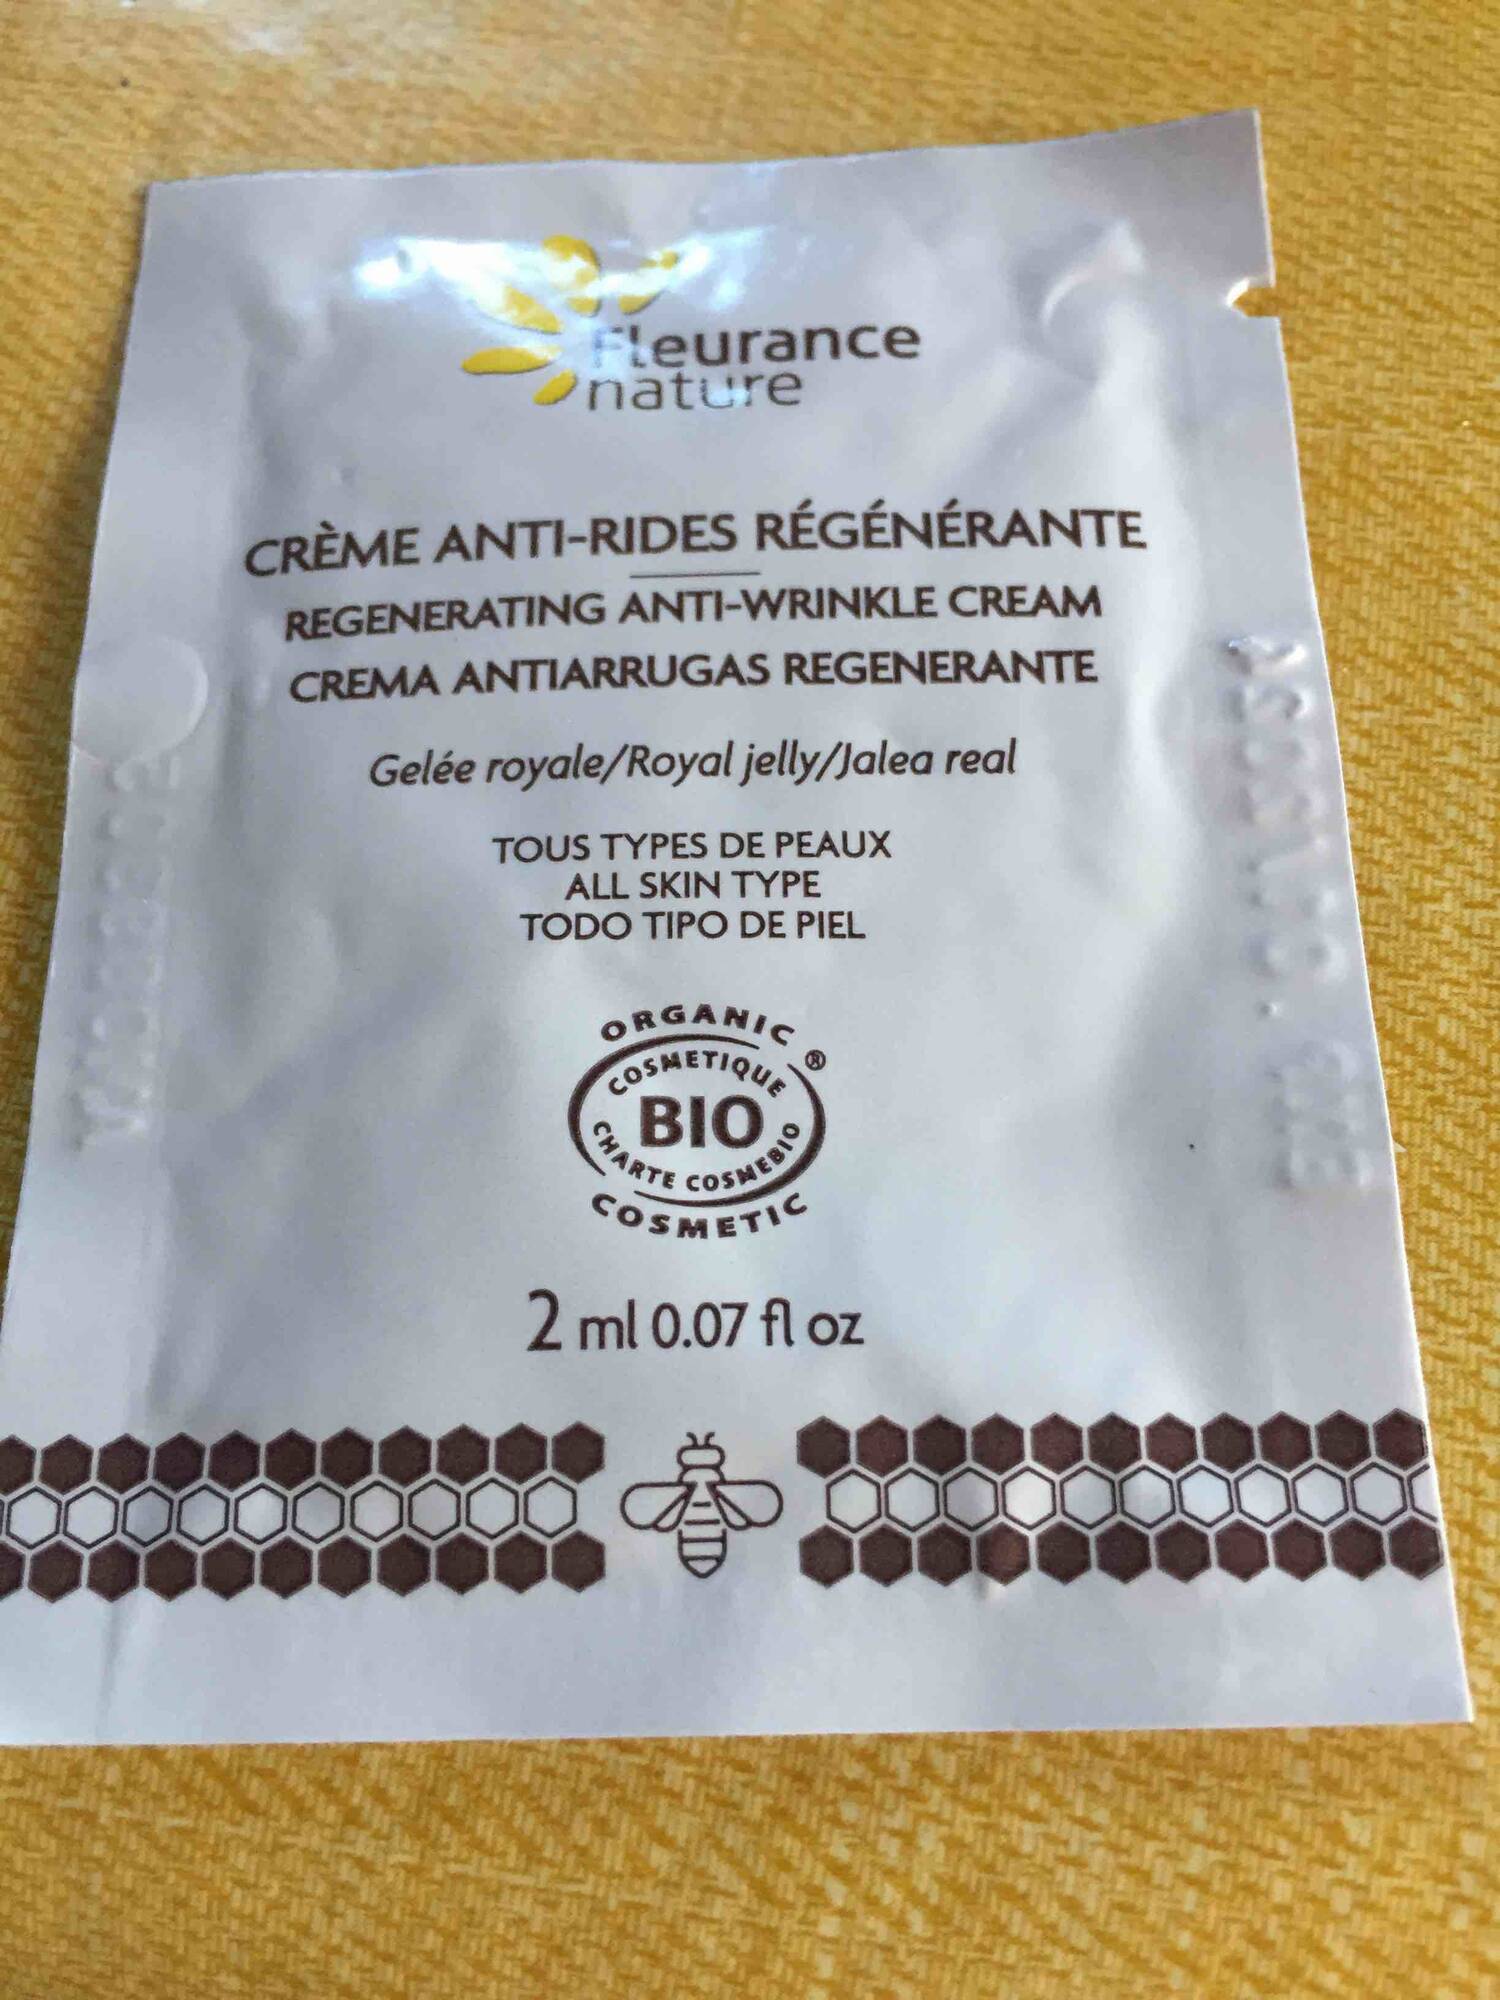 FLEURANCE NATURE - Crème anti-rides régénérante